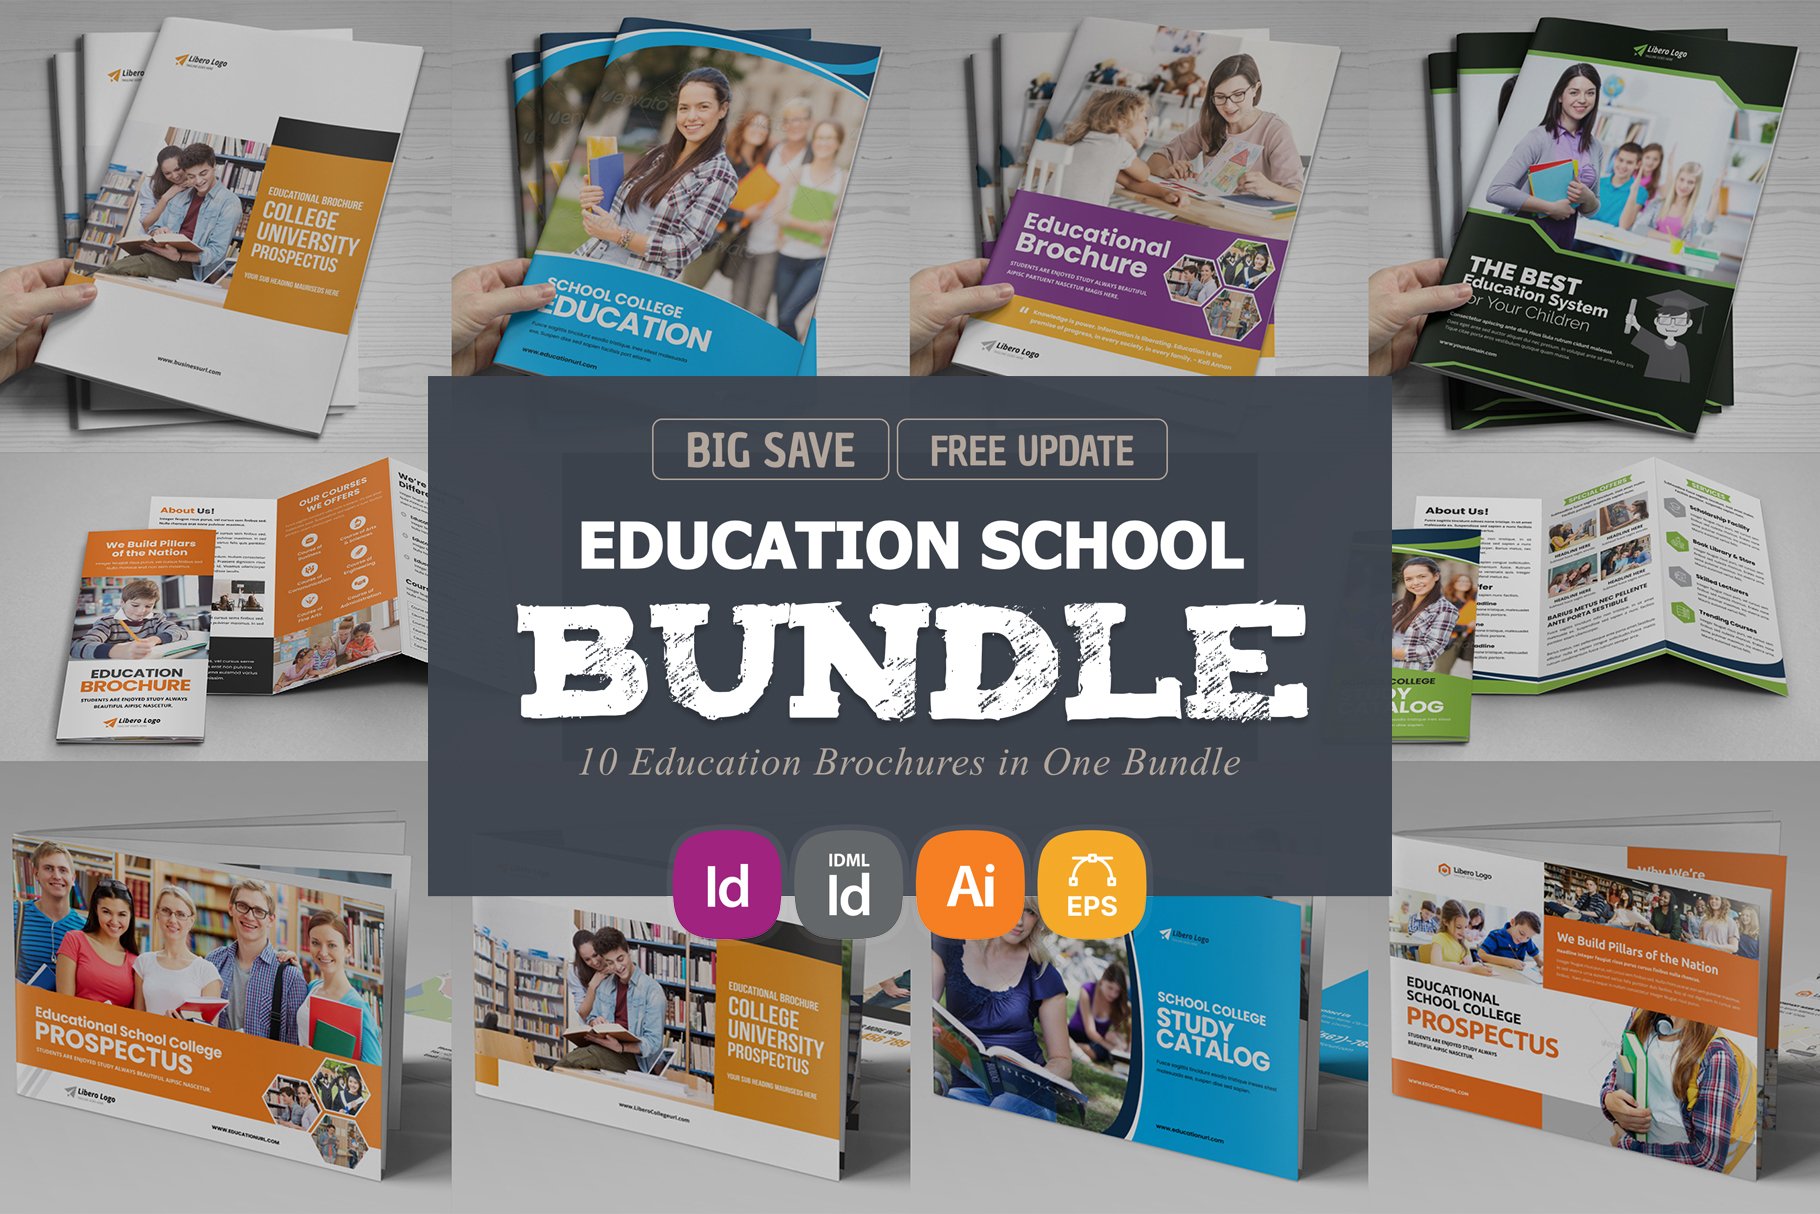 Education Brochure Bundle v2 cover image.